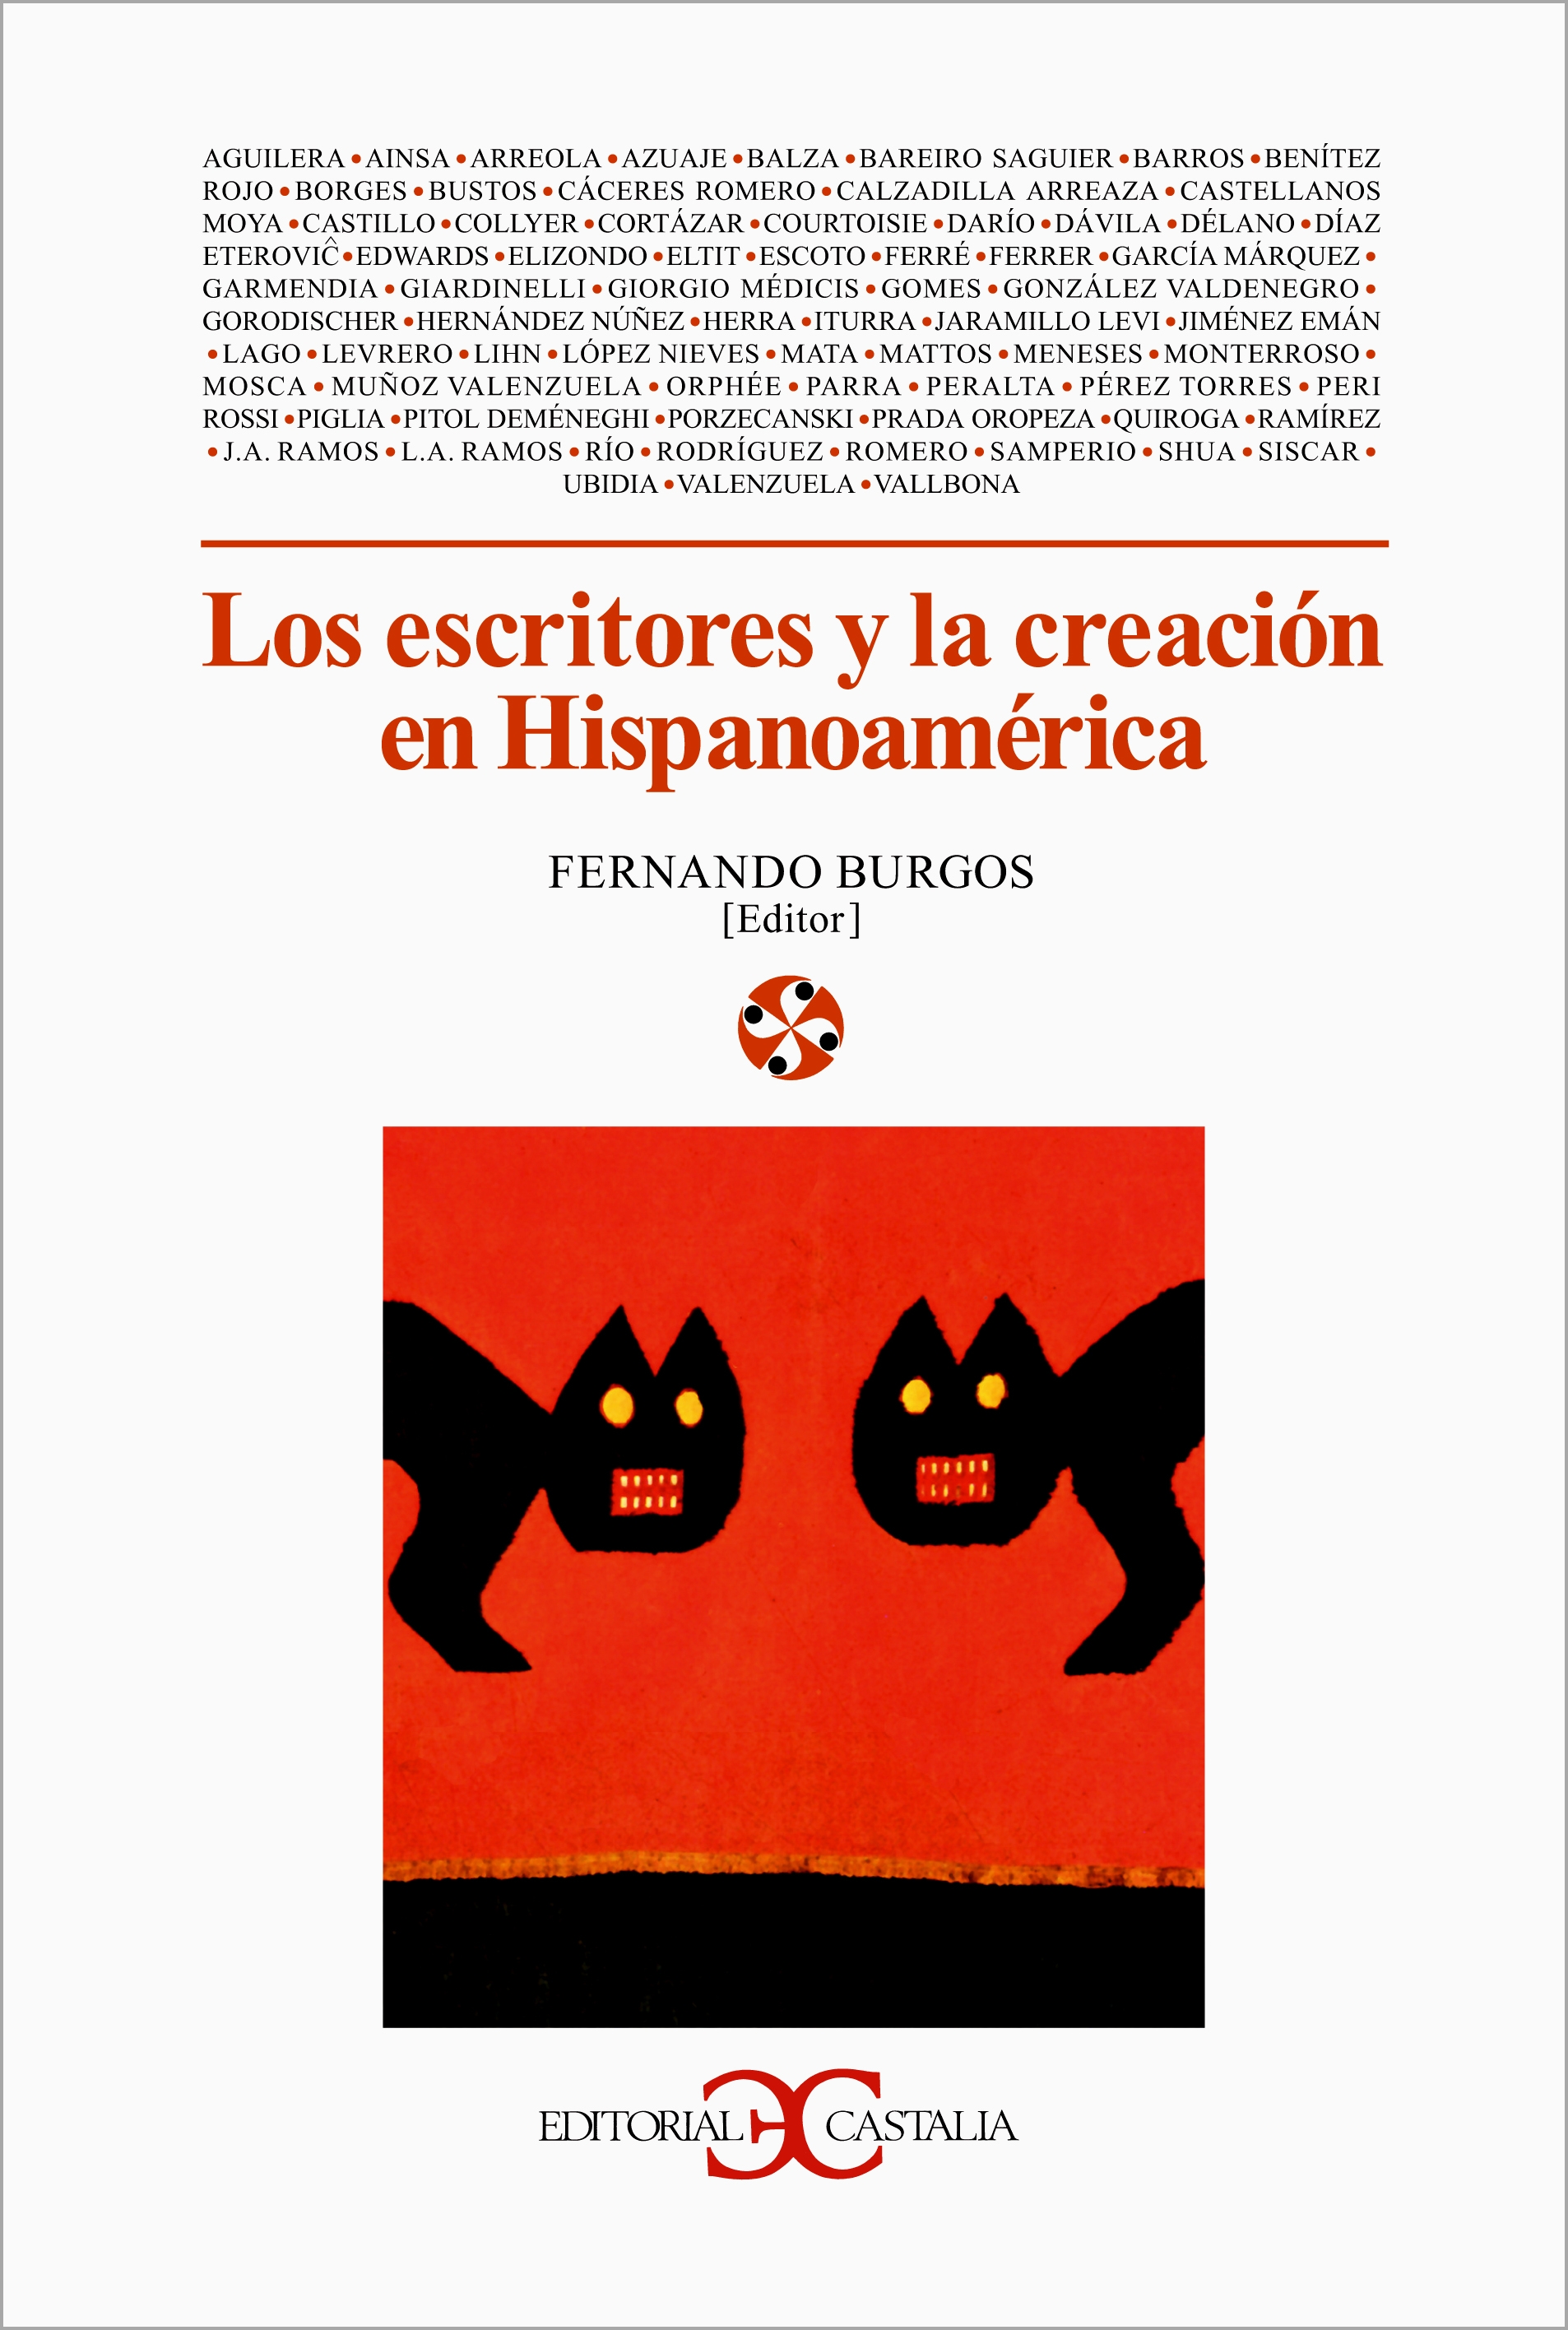 Los escritores y la creación en Hispanoamérica